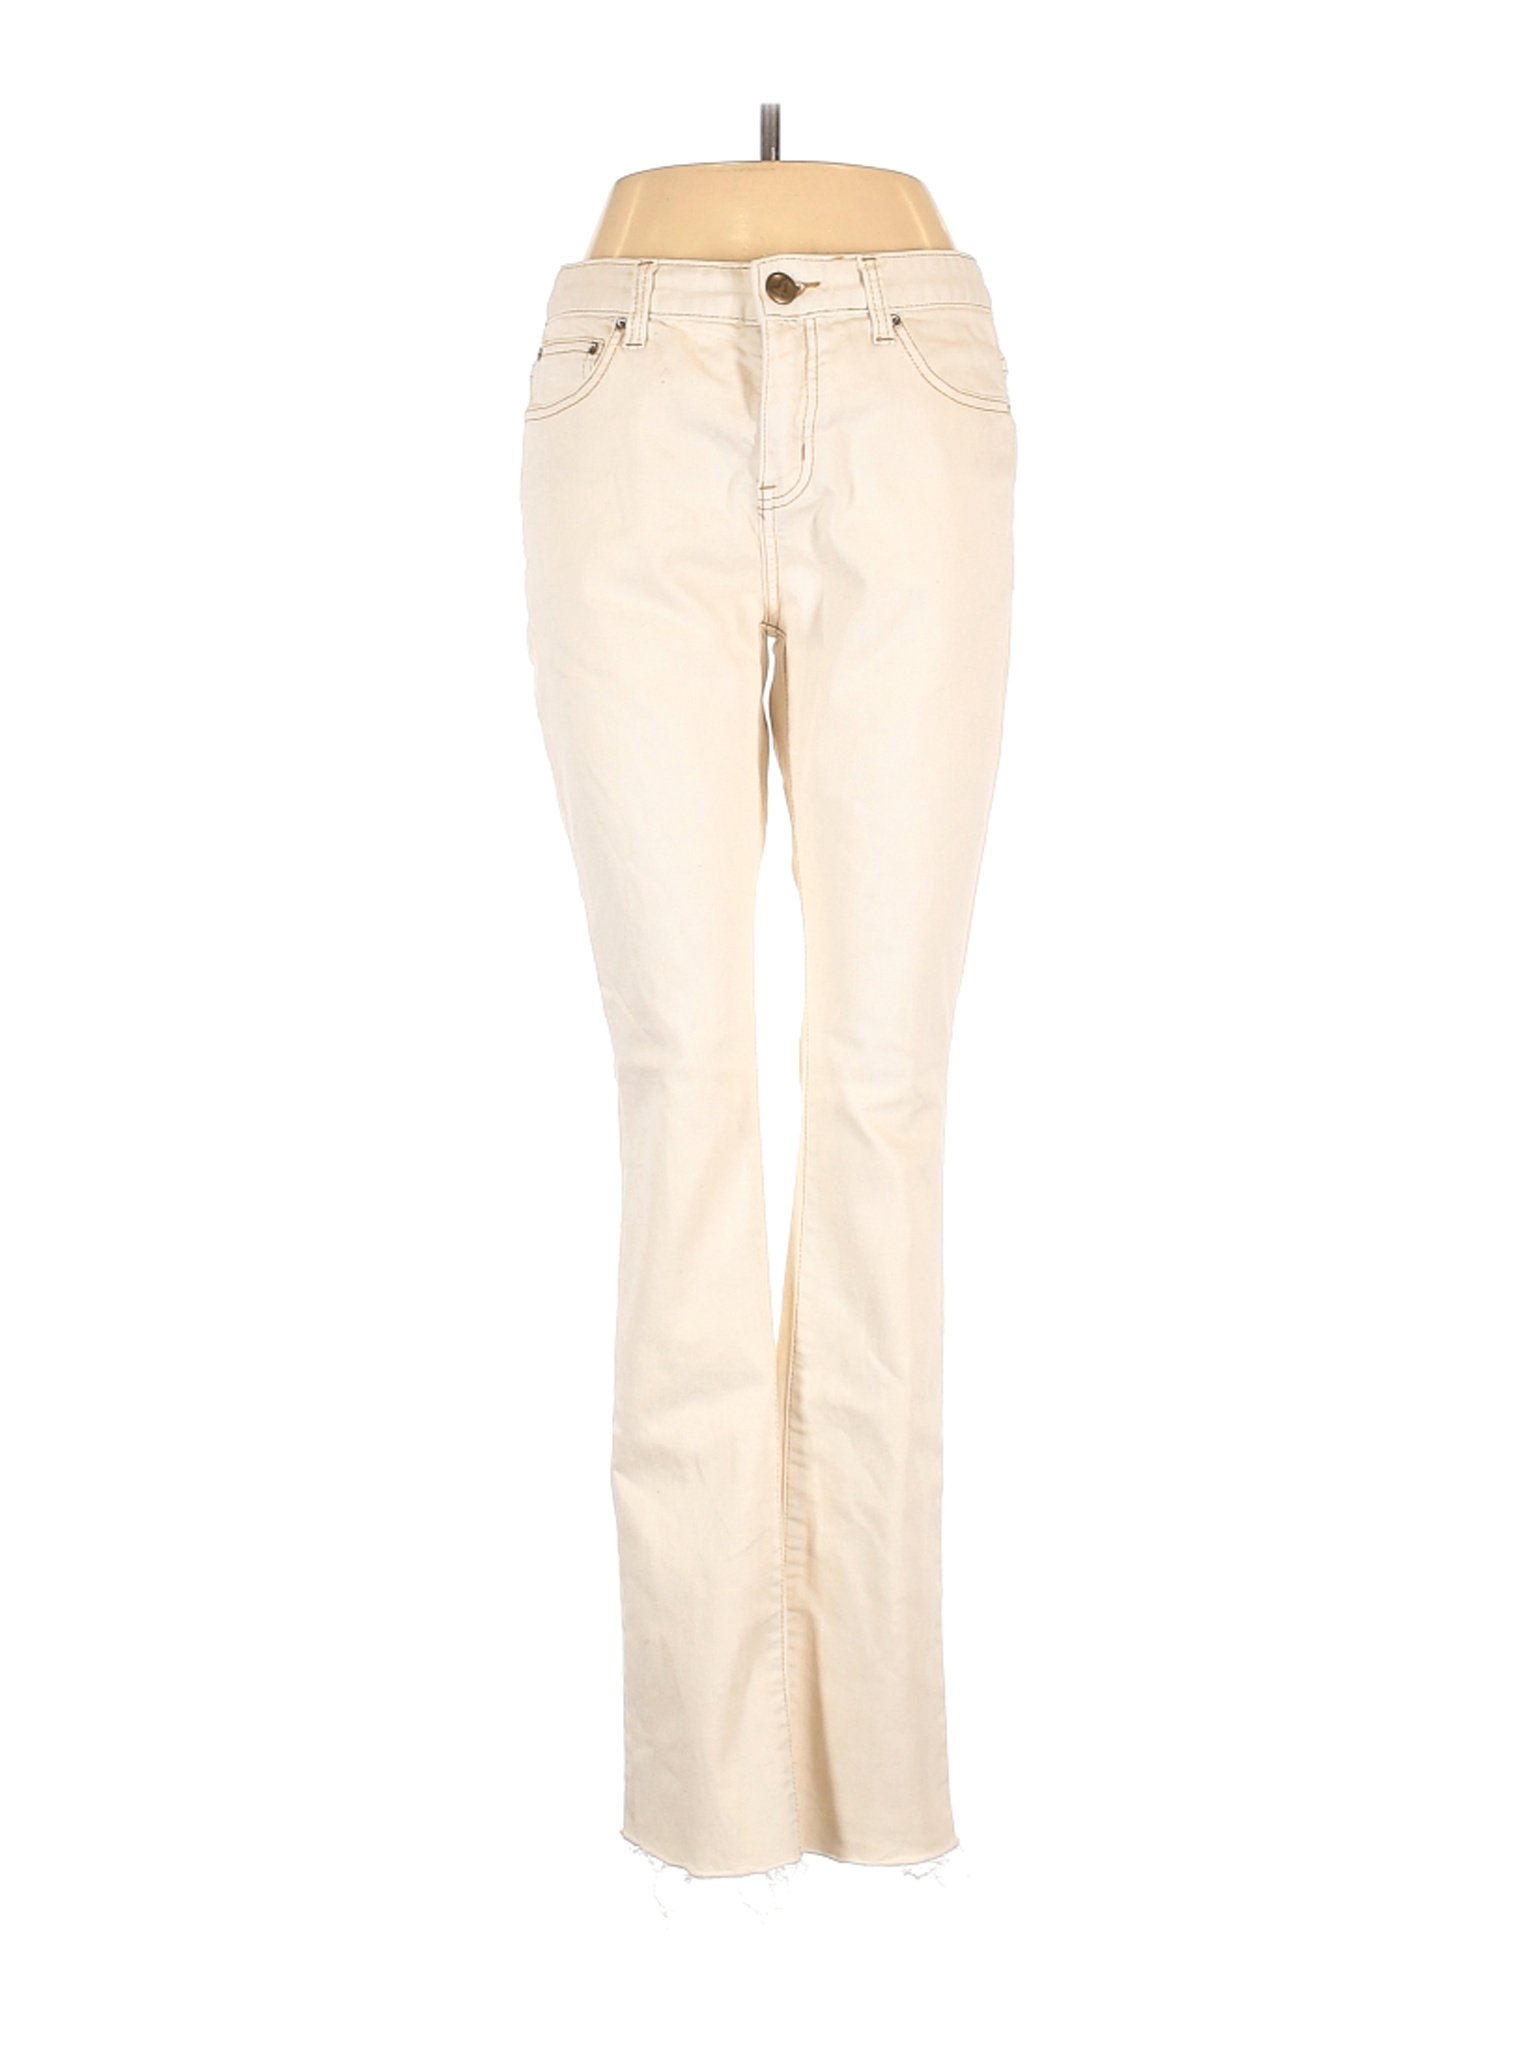 Free People Women Ivory Jeans 27W | eBay